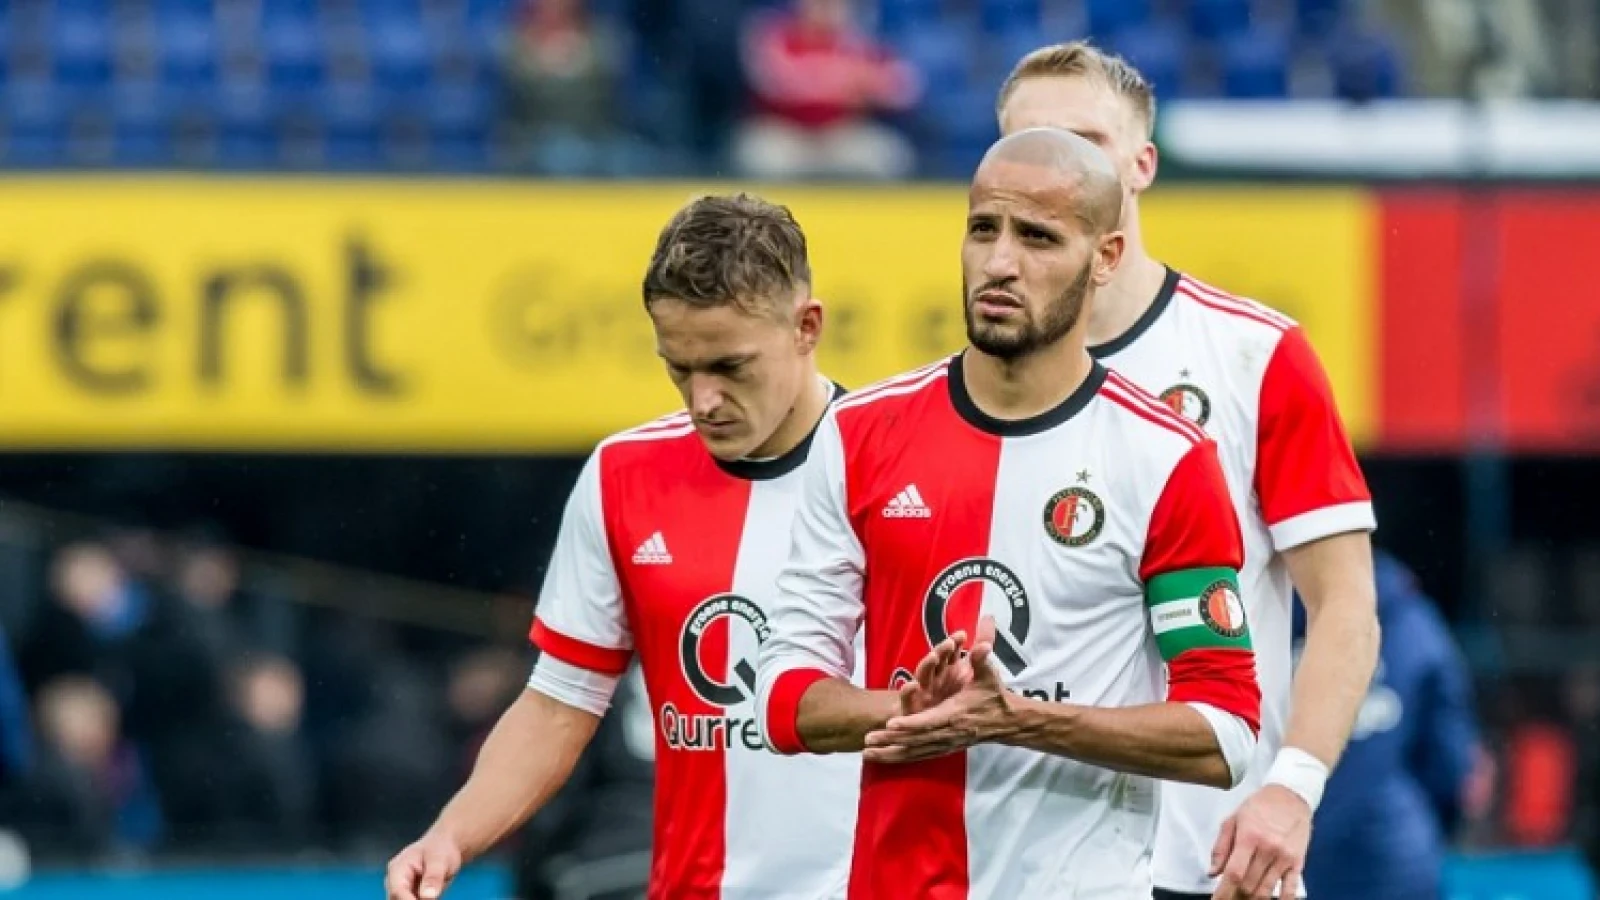 Analyse van tobbend Feyenoord: 'Falende aanvoerder, slechte teamspirit en niet-scorende spits'